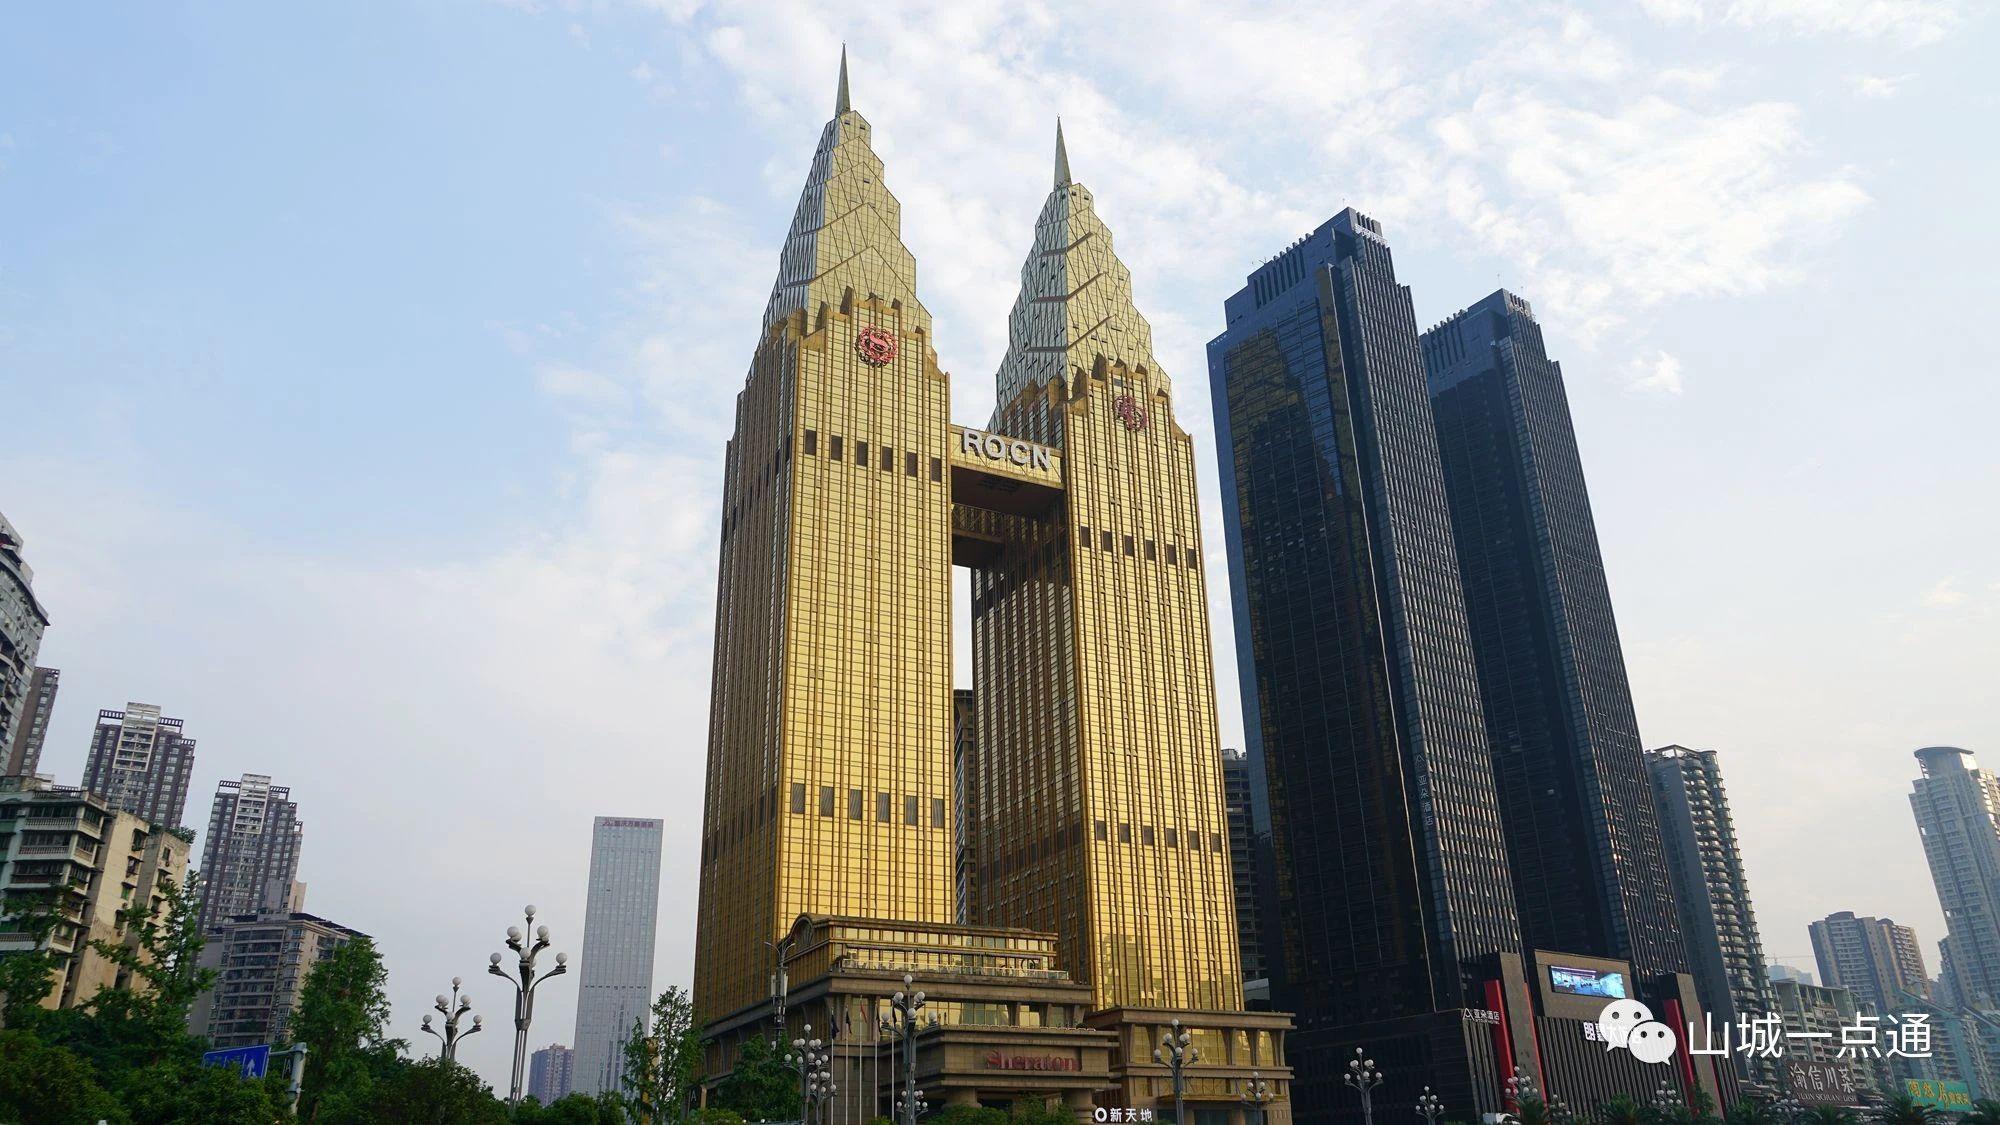 双子塔位于重庆市南岸区南滨路海棠烟雨公园的对面,这两座摩天大楼的